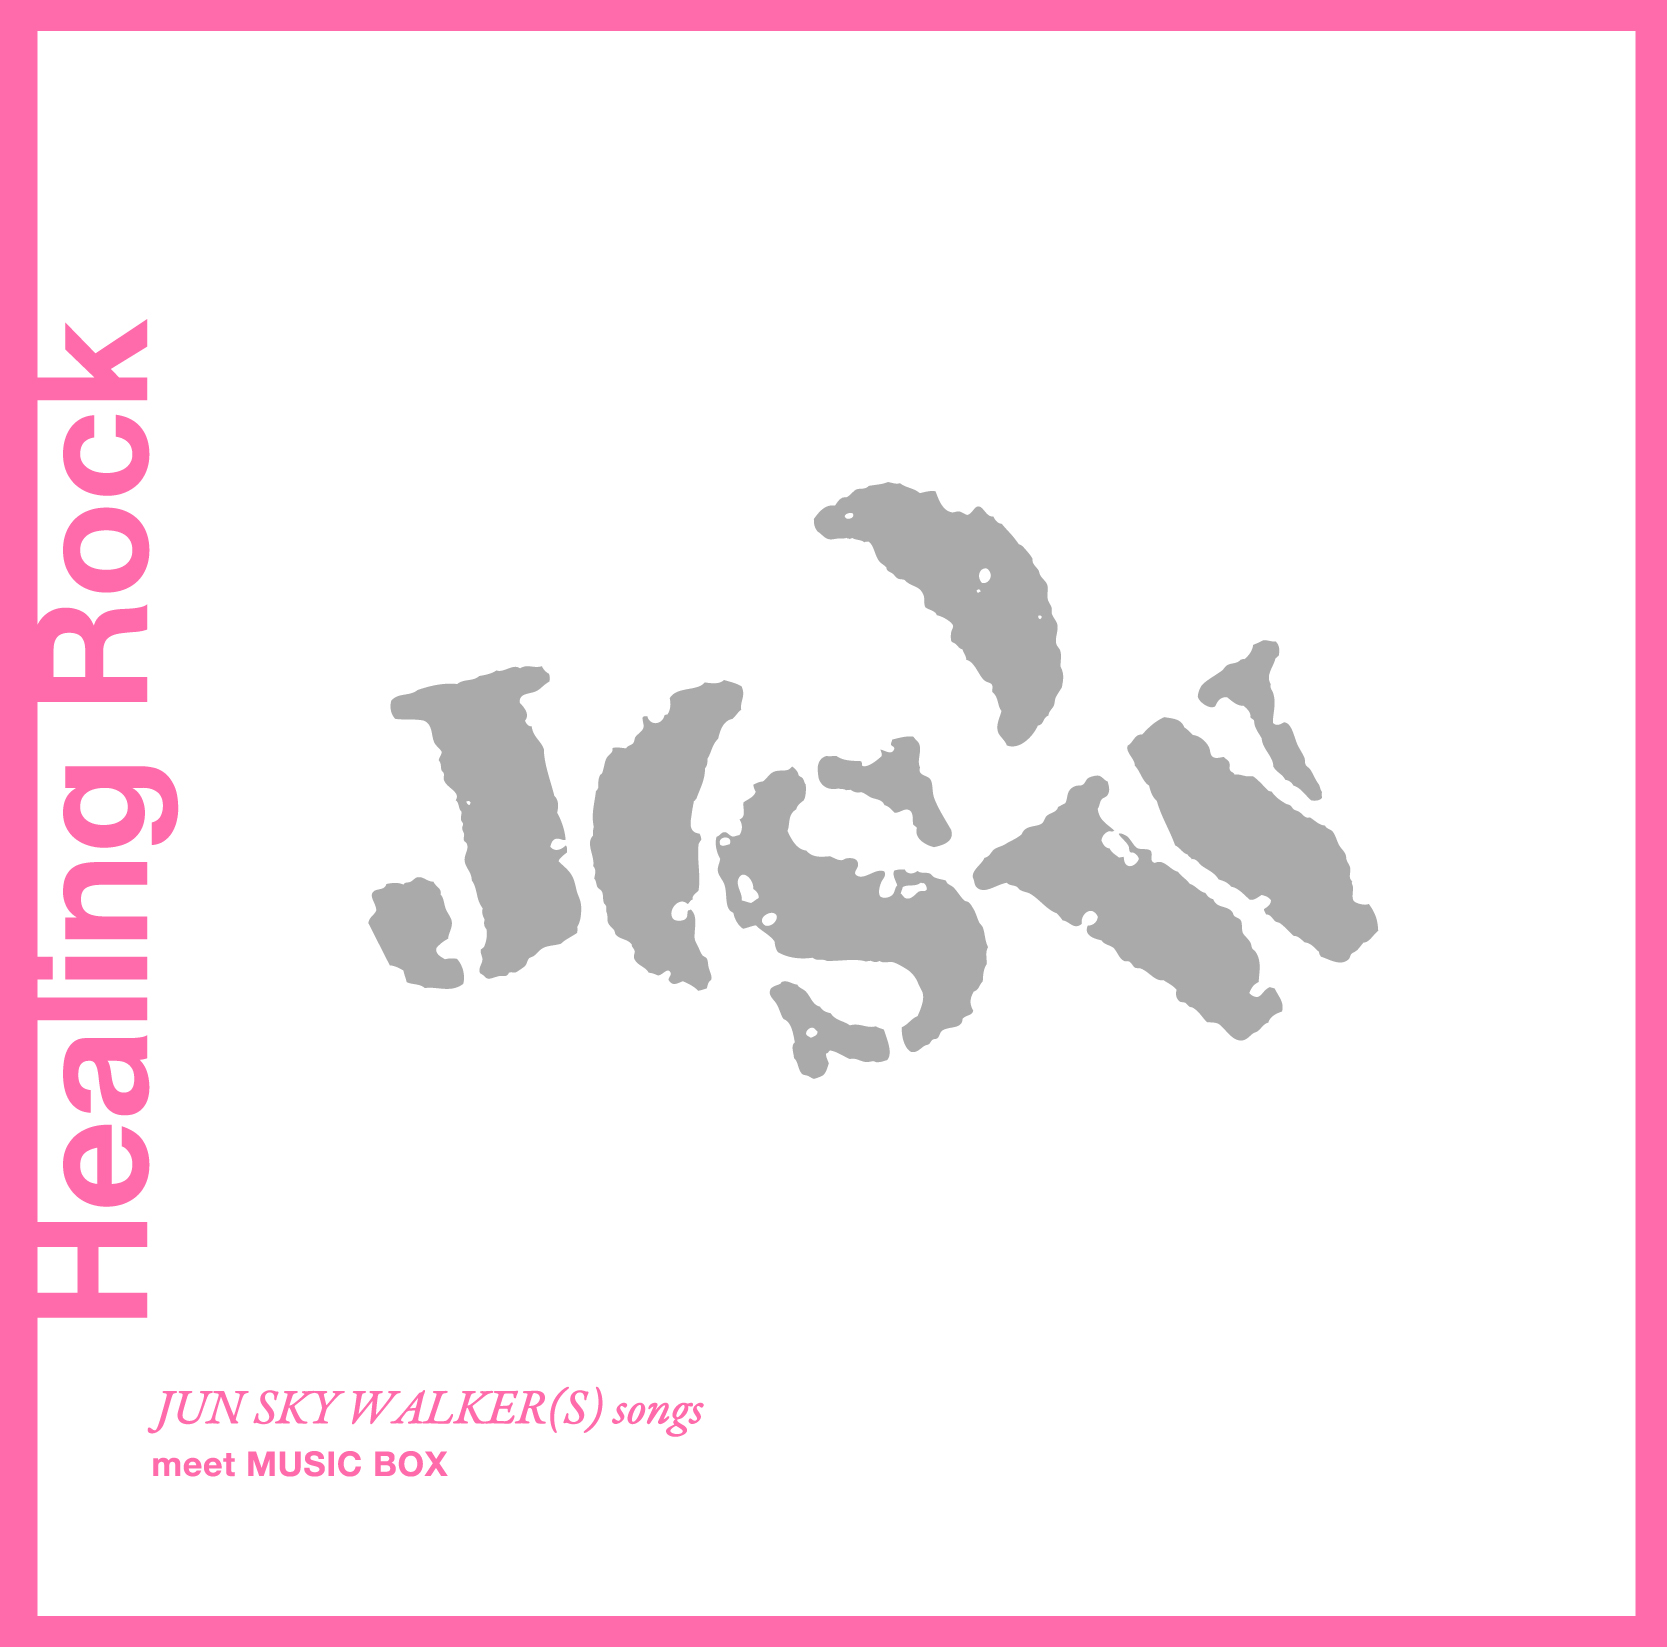 Healing Rock 〜JUN SKY WALKER(S) songs meet MUSIC BOX〜 / Super Natural